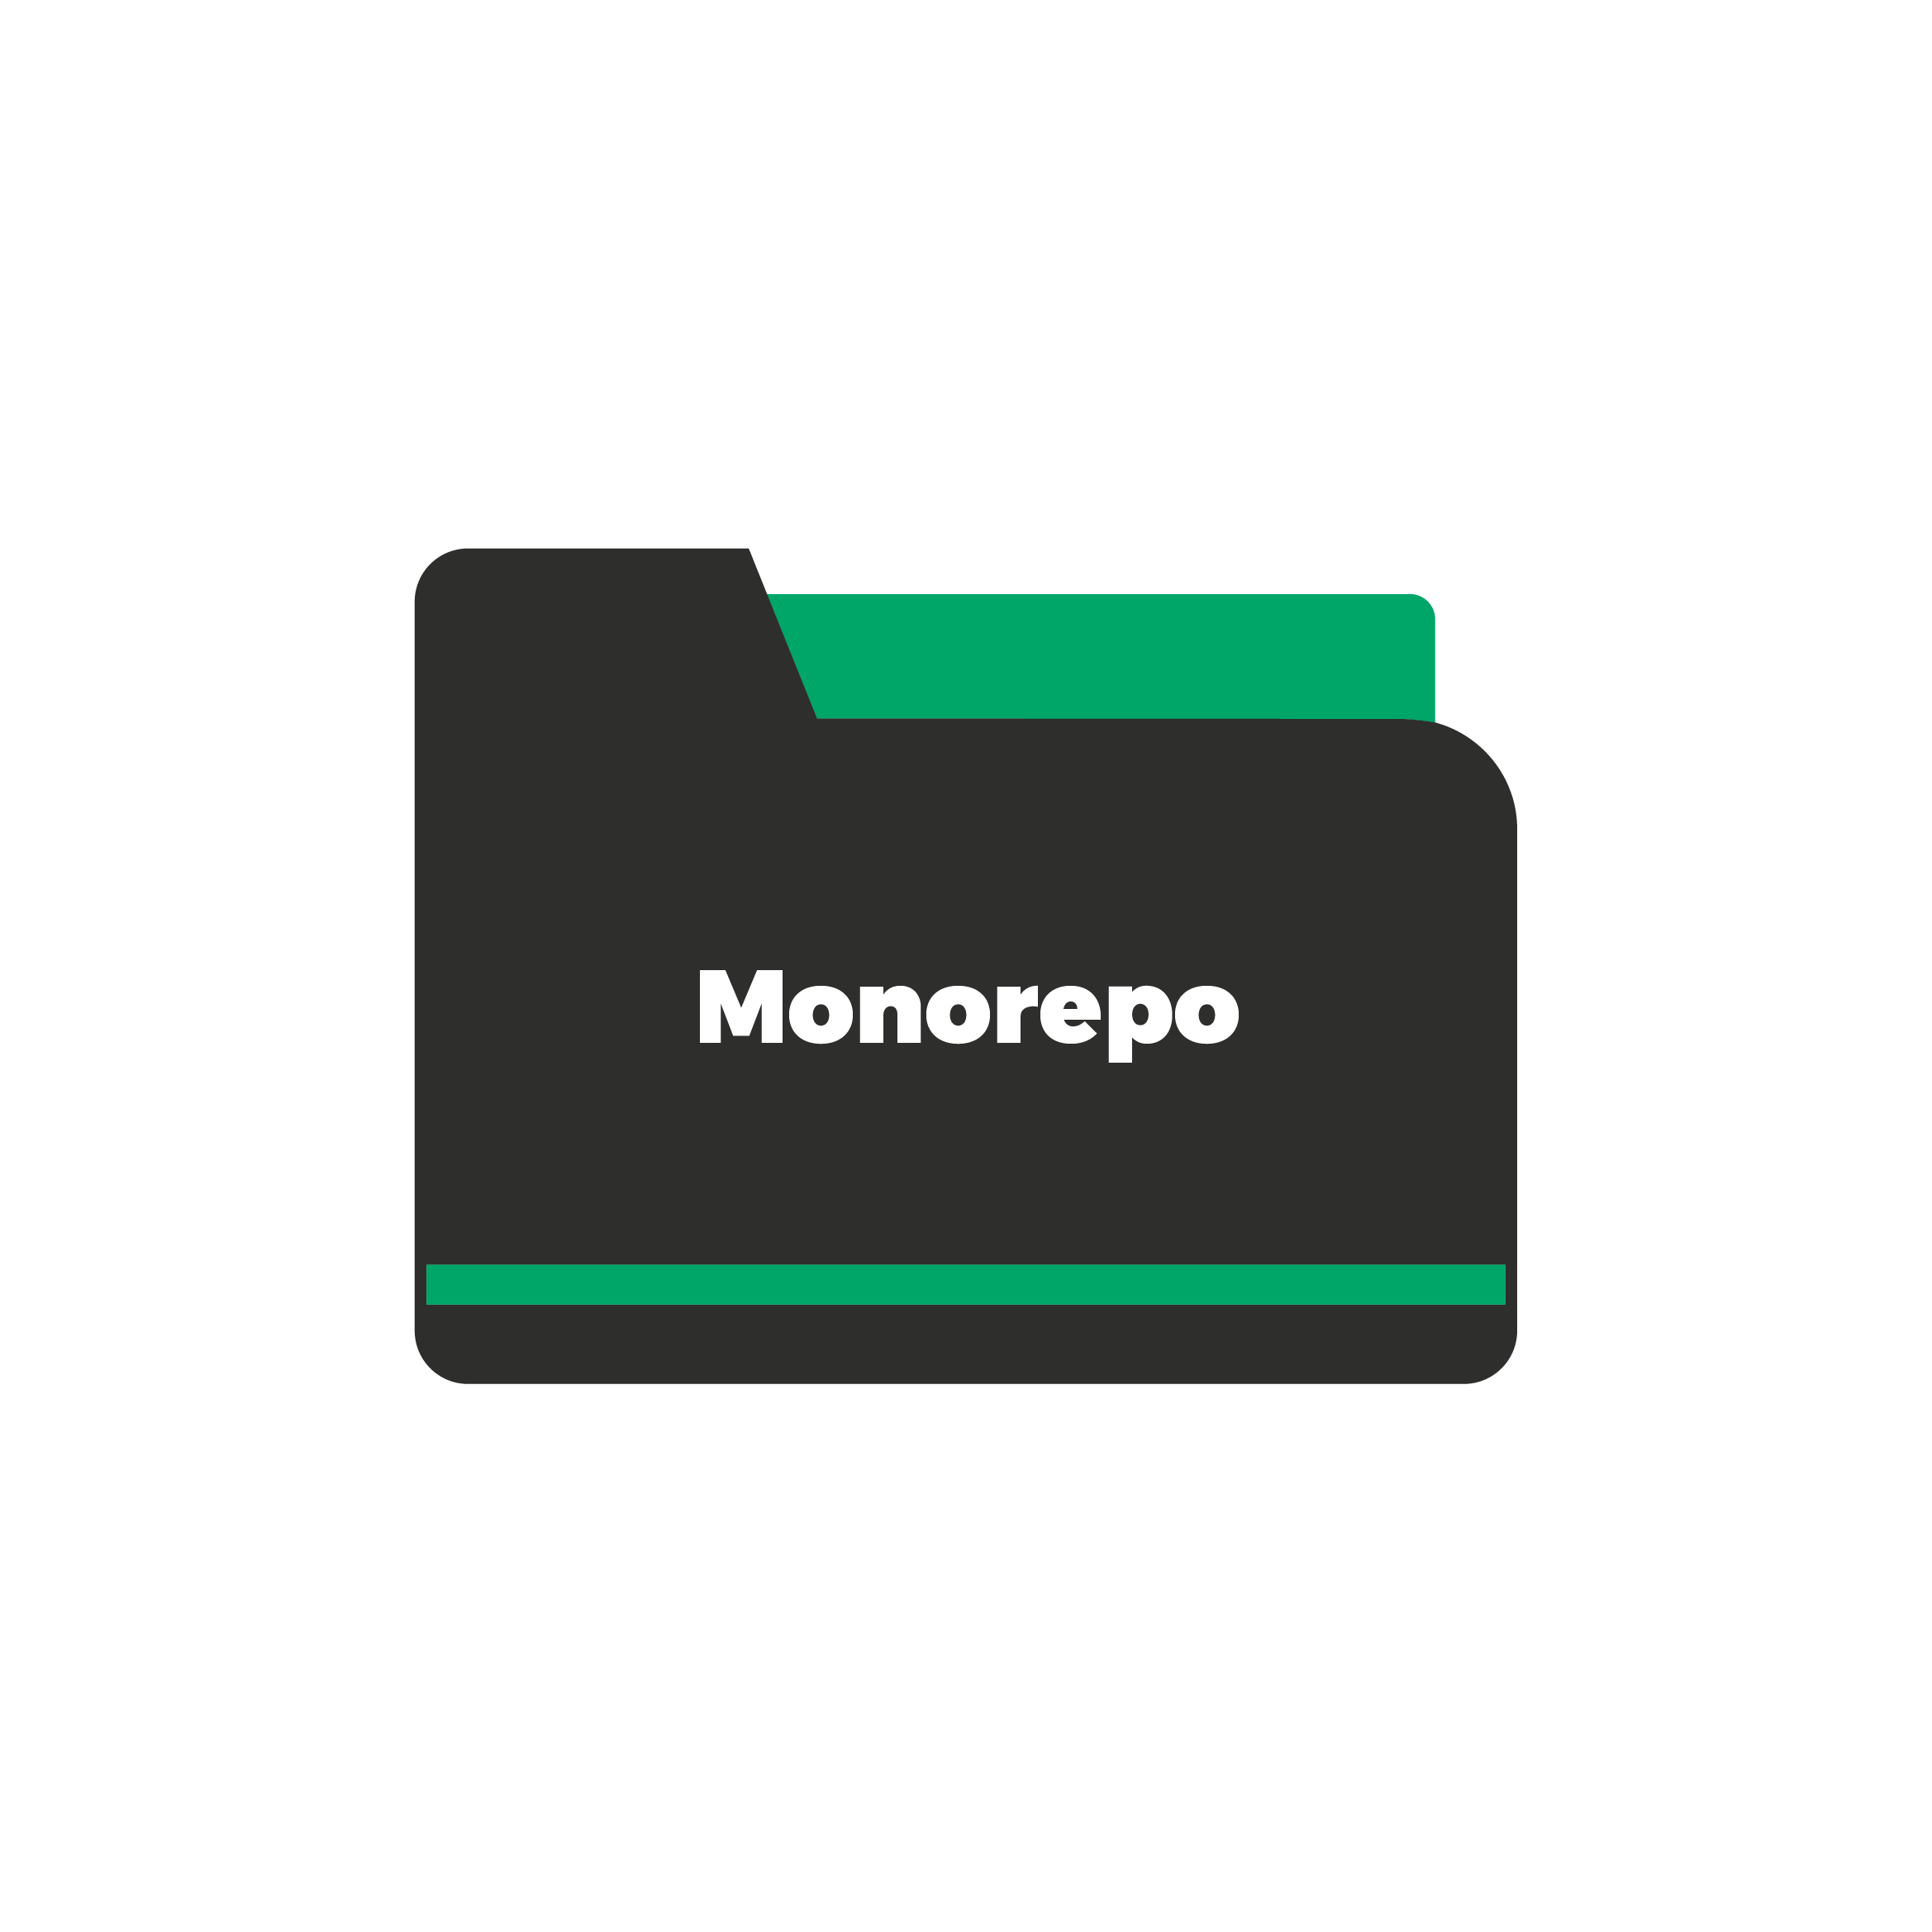 De drie voordelen van Monorepo